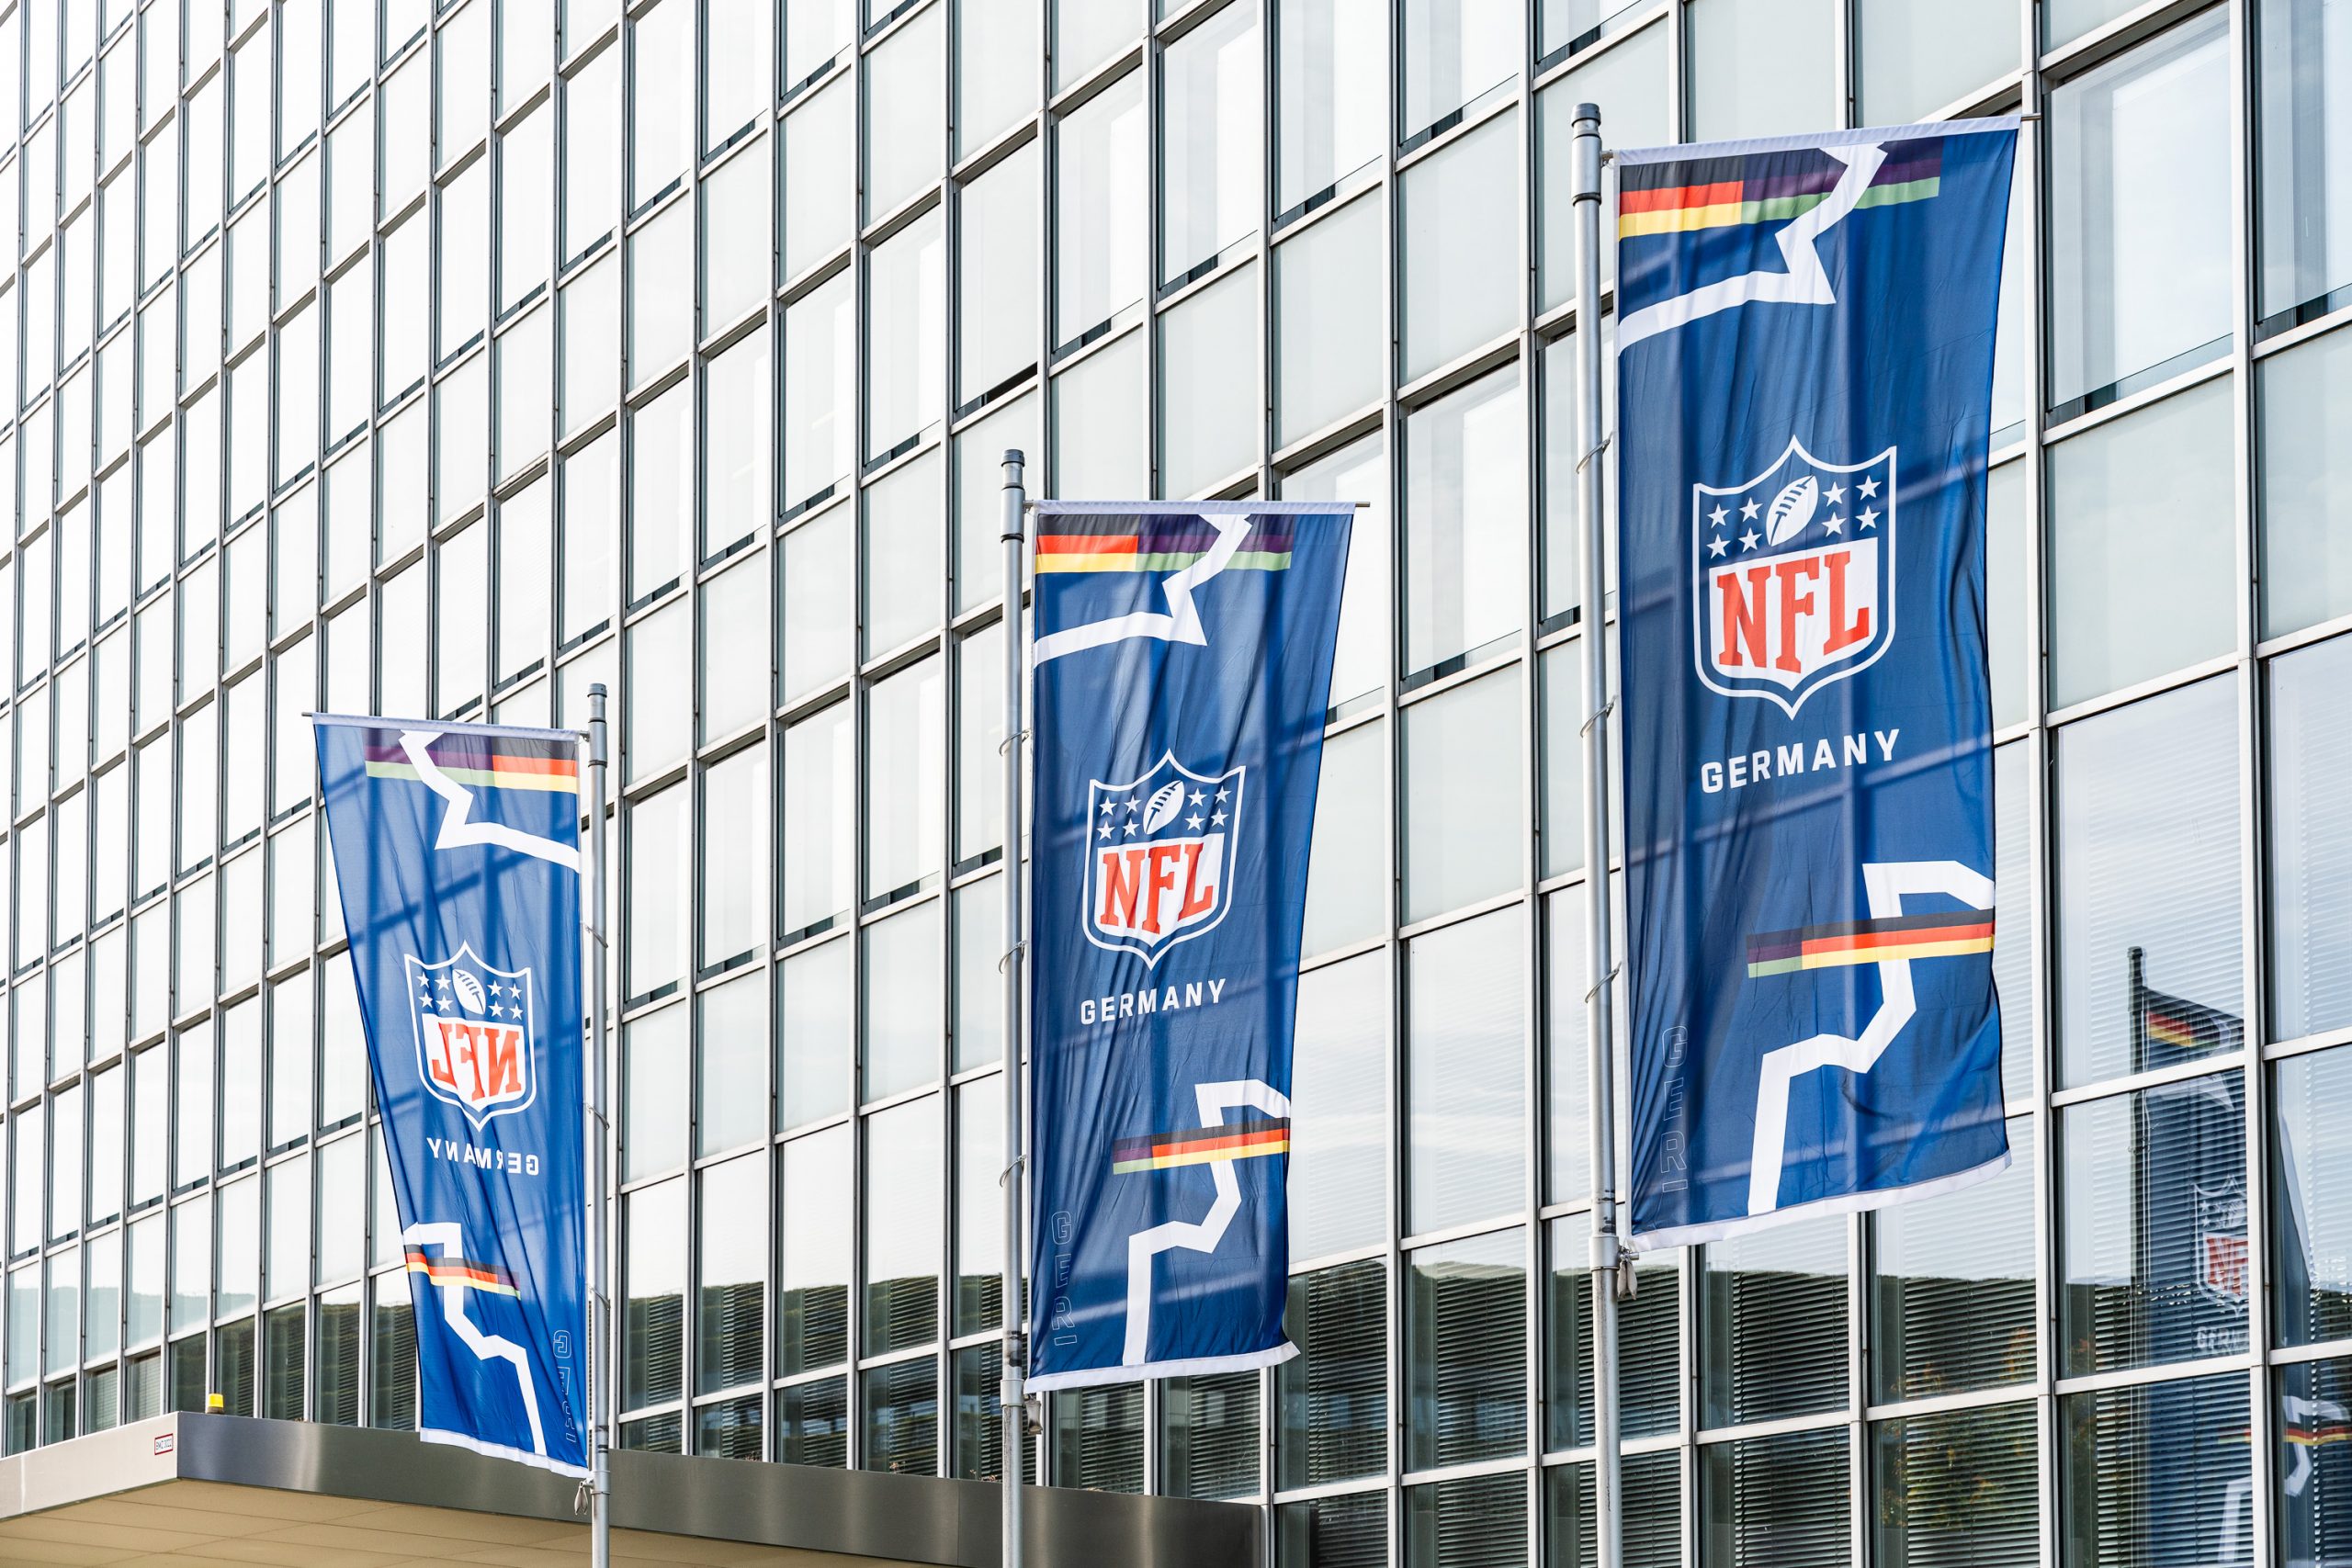 FootballR - NFL - Verwendete Schlüsselwörter: NFL, Deutschland

Beschreibung: NFL-Flaggen hängen vor einem neu eröffneten Deutschland-Hauptquartier in Düsseldorf.